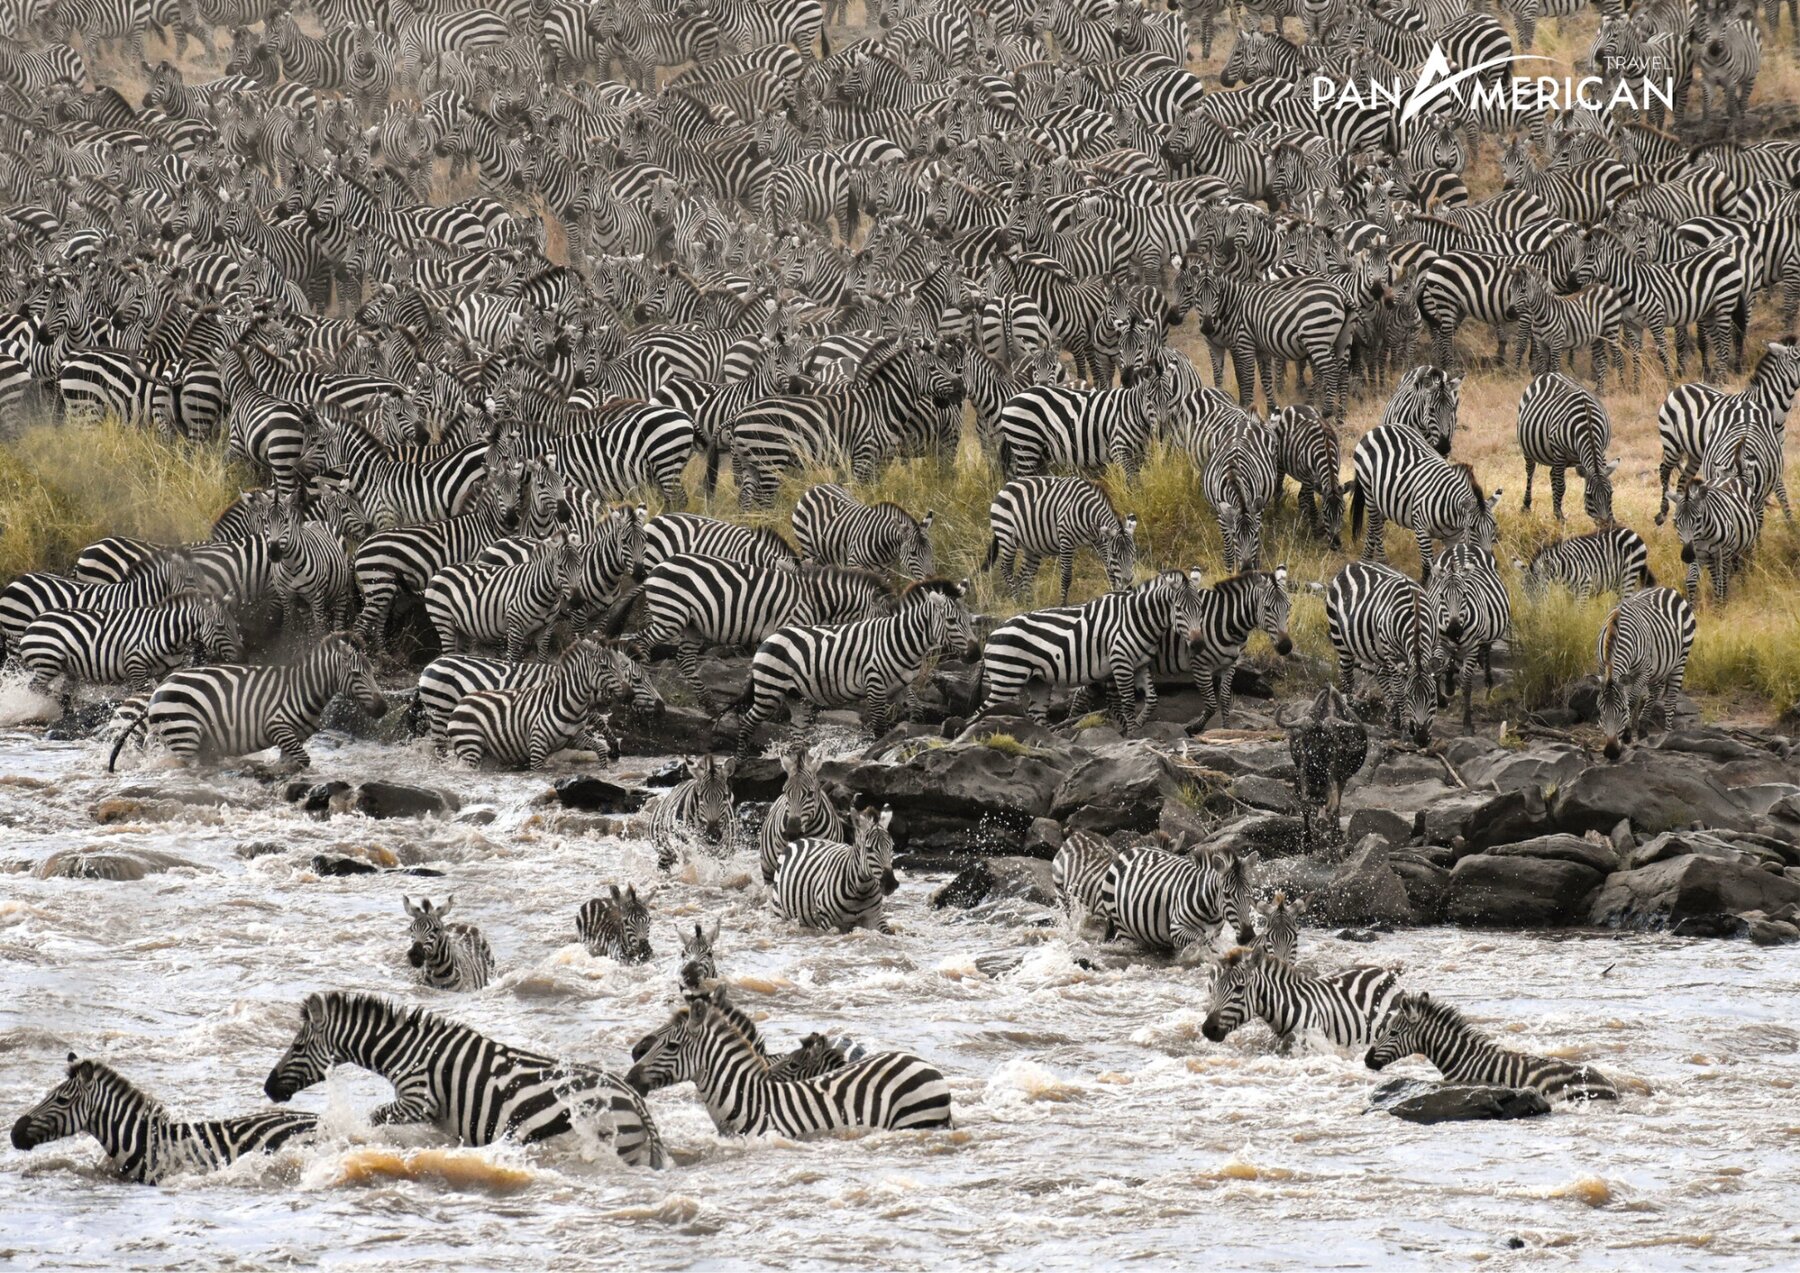 Mùa di cư của hàng trăm nghìn loài thú tại Masai Mara